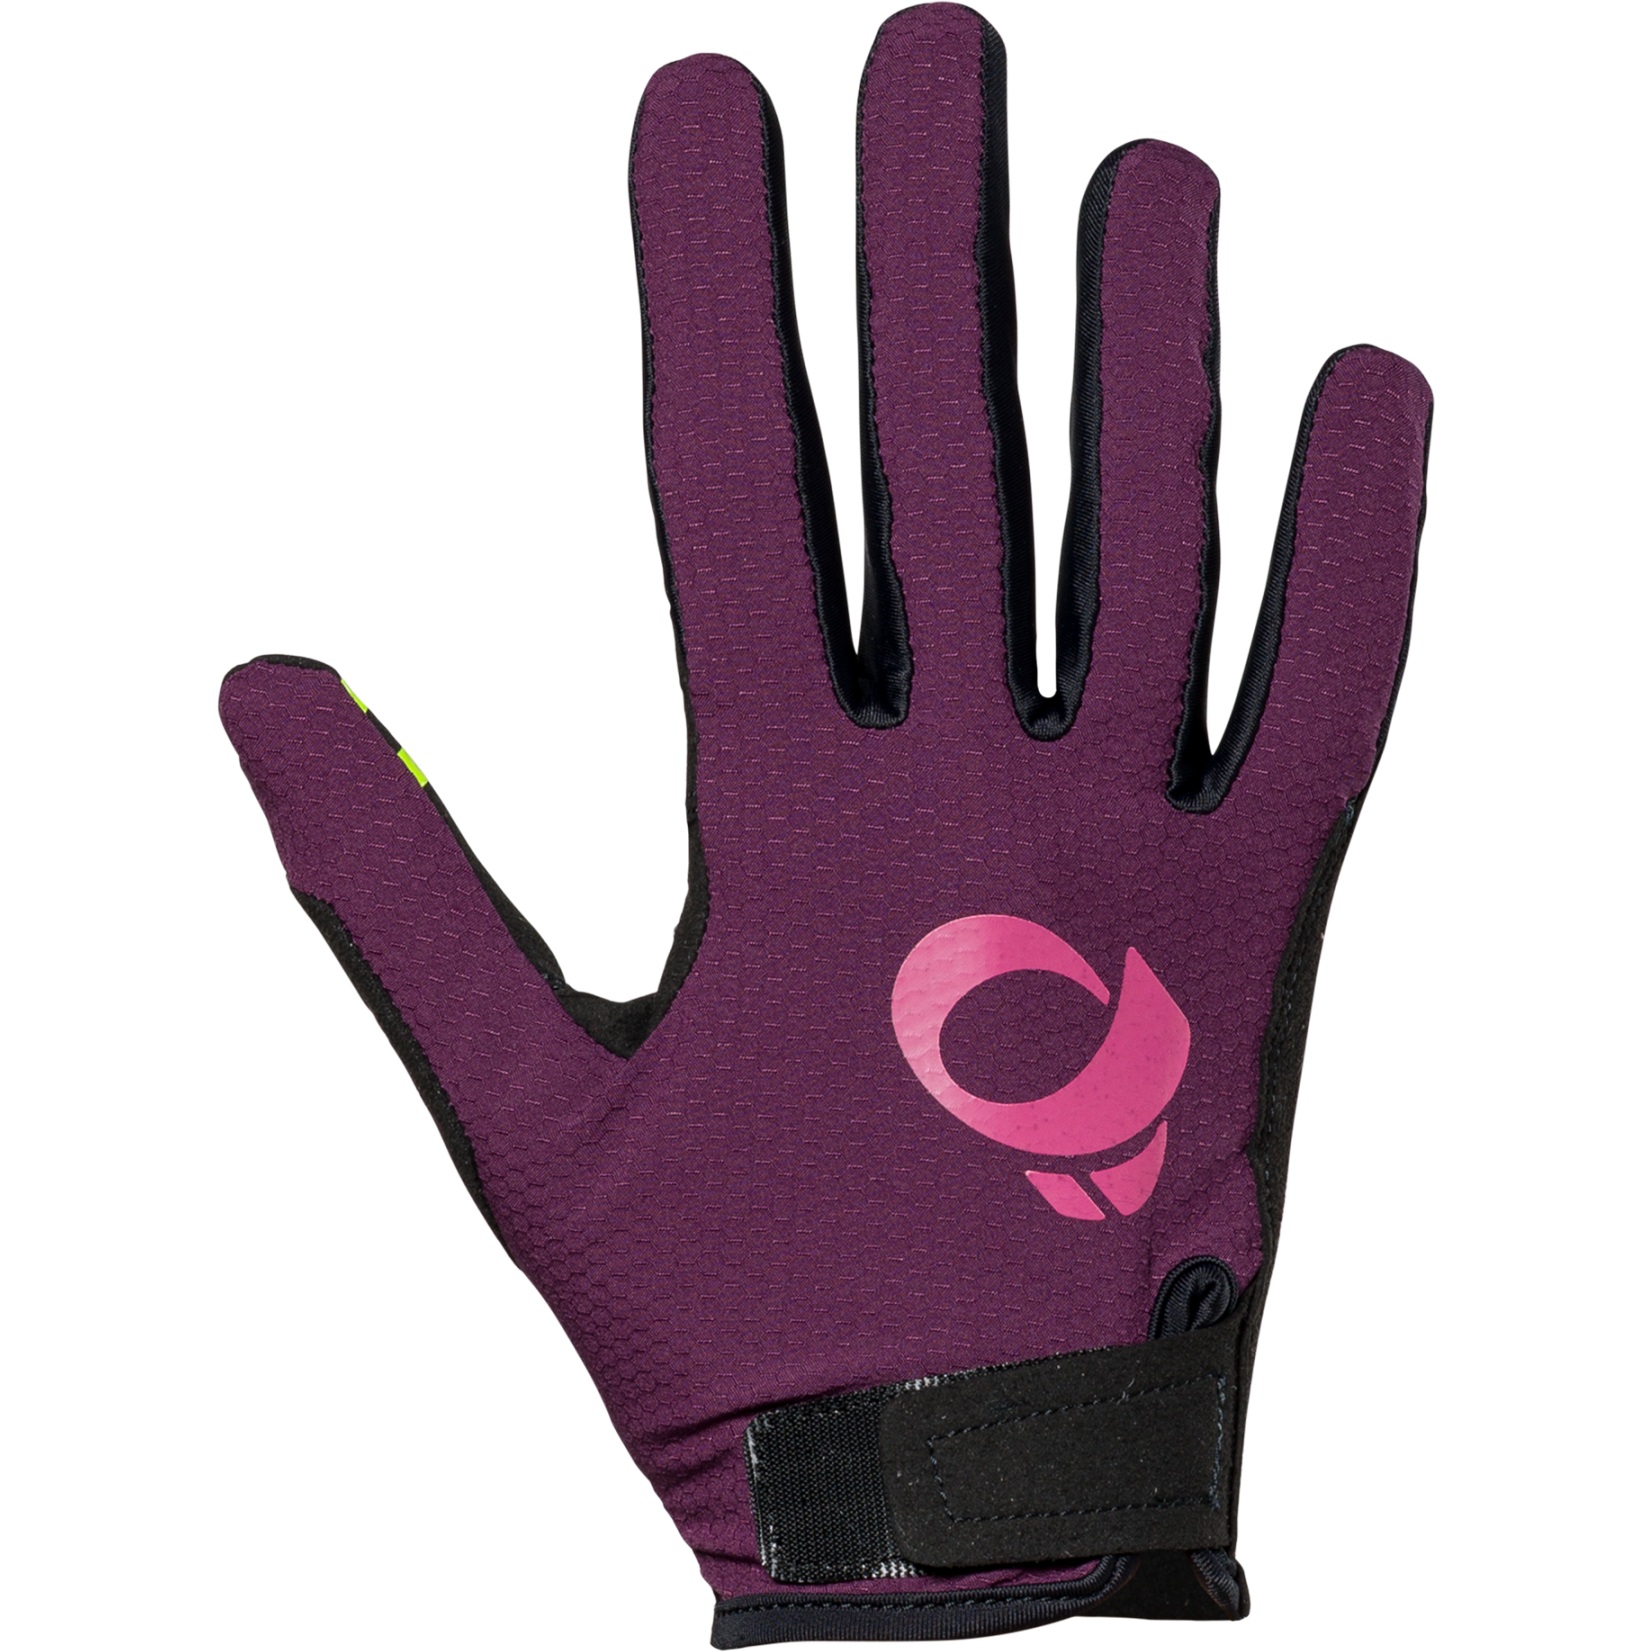 Produktbild von PEARL iZUMi Summit MTB Handschuhe Damen 14242401 - dark violet - AA4